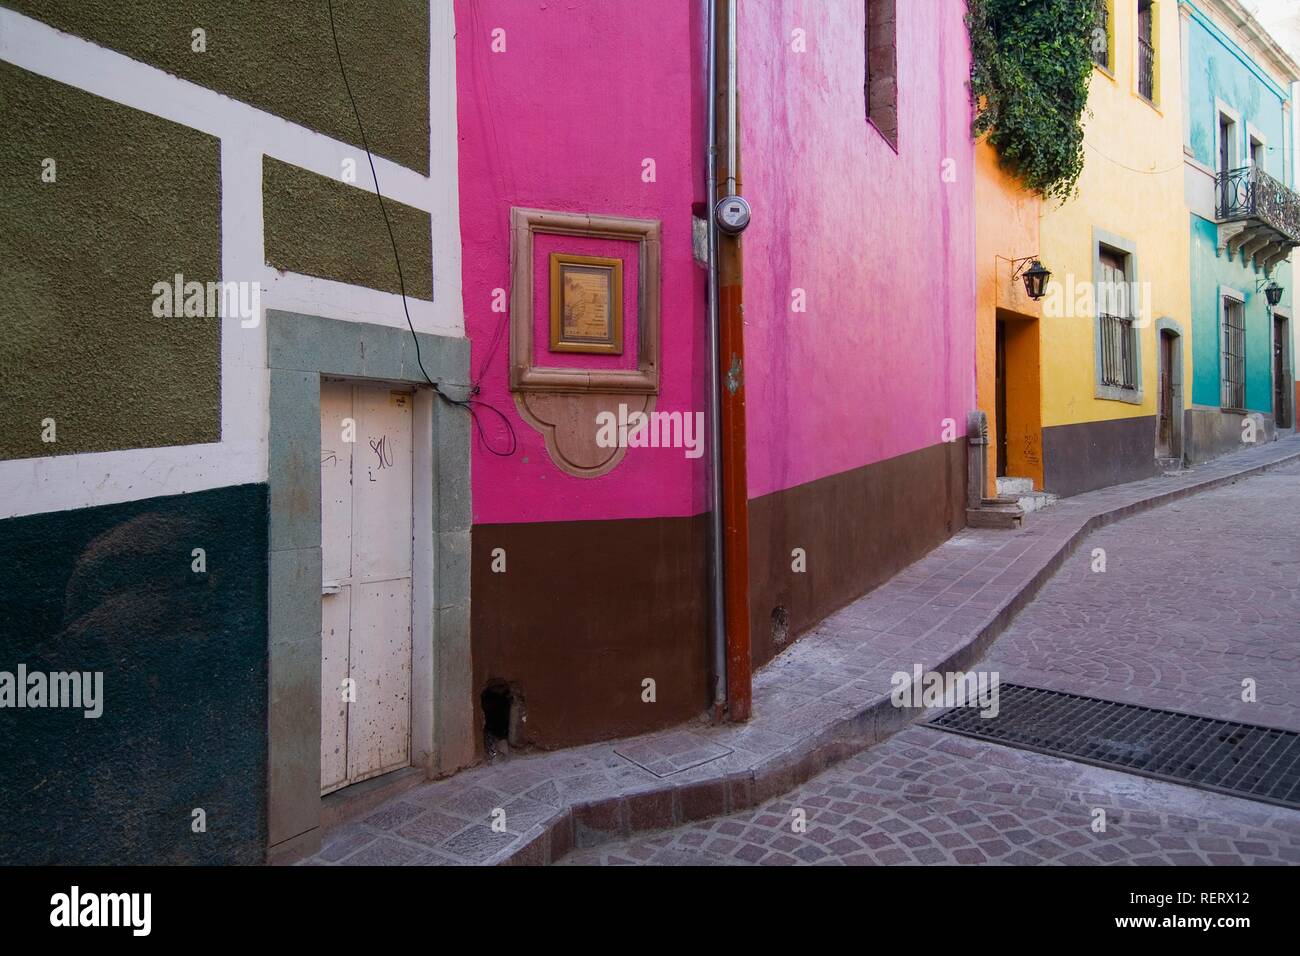 Maisons peintes de couleurs vives, ville historique de Guanajuato, UNESCO World Heritage Site, Province de Guanajuato, Mexique Banque D'Images